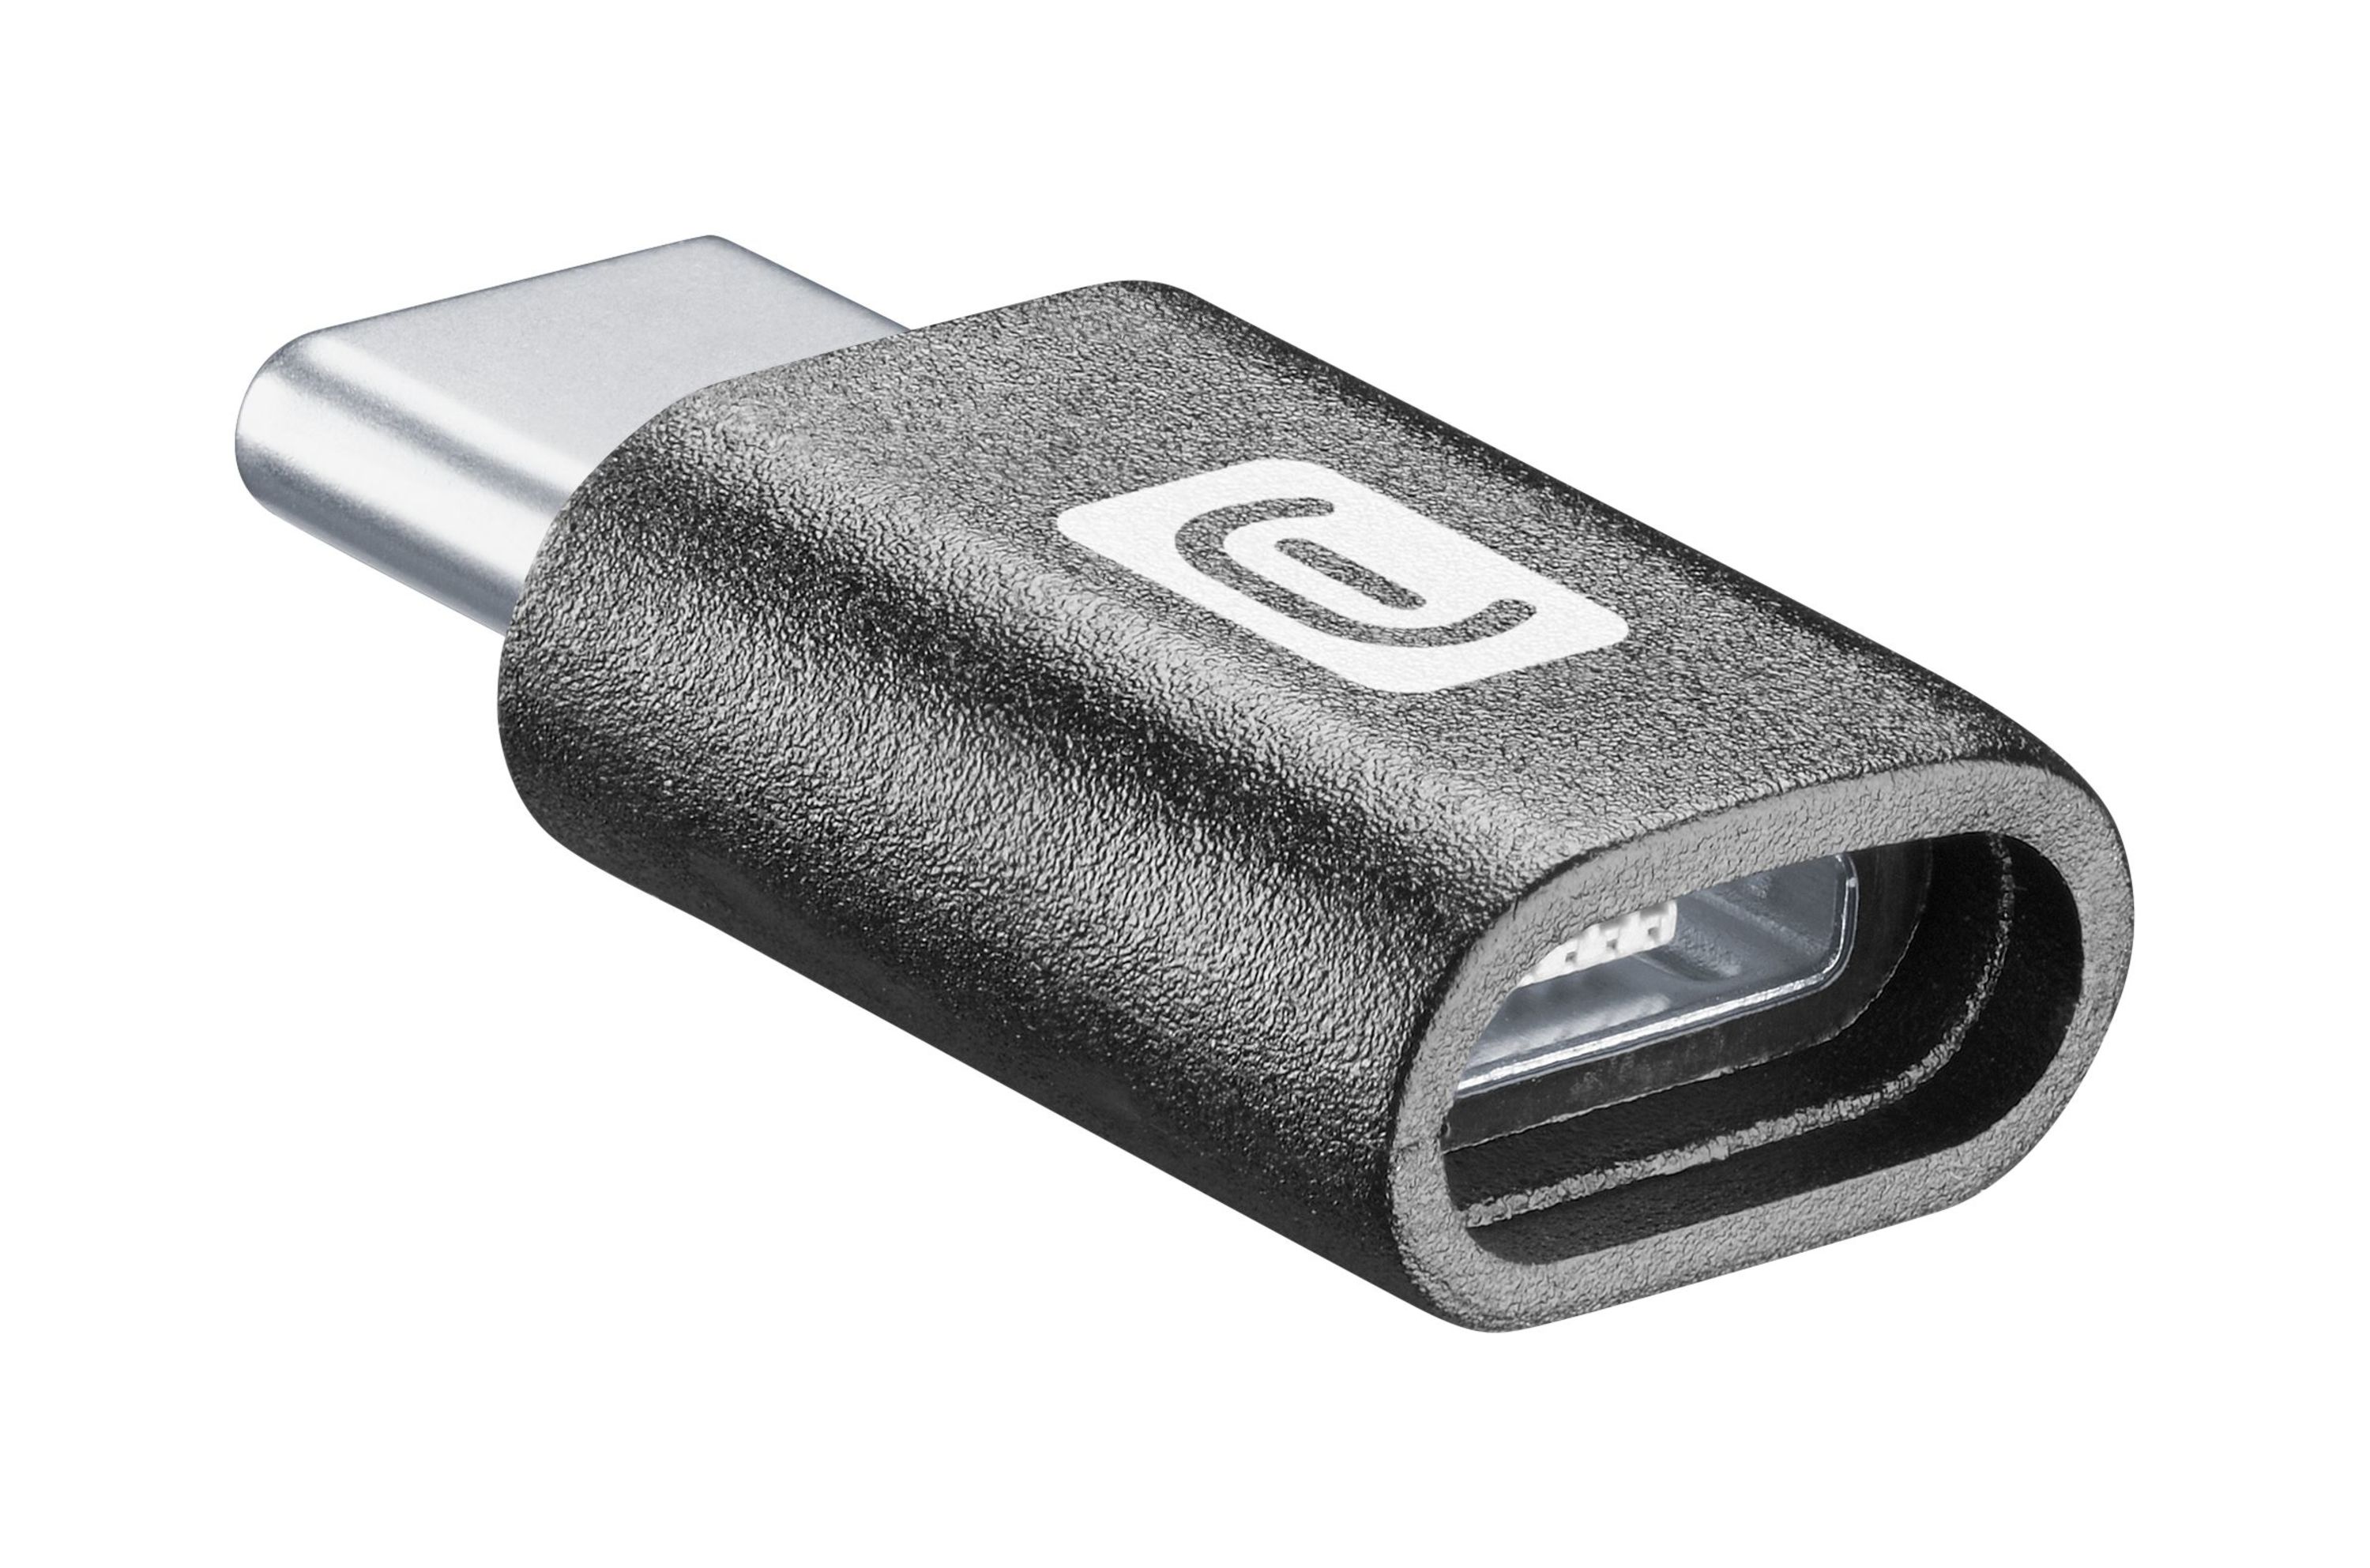 Adaptateur et convertisseur GENERIQUE CABLING® Micro USB vers USB 3.1 type C  USB mâle Adaptateur de Données pour Nokia Letv meizu OnePlus ZUK